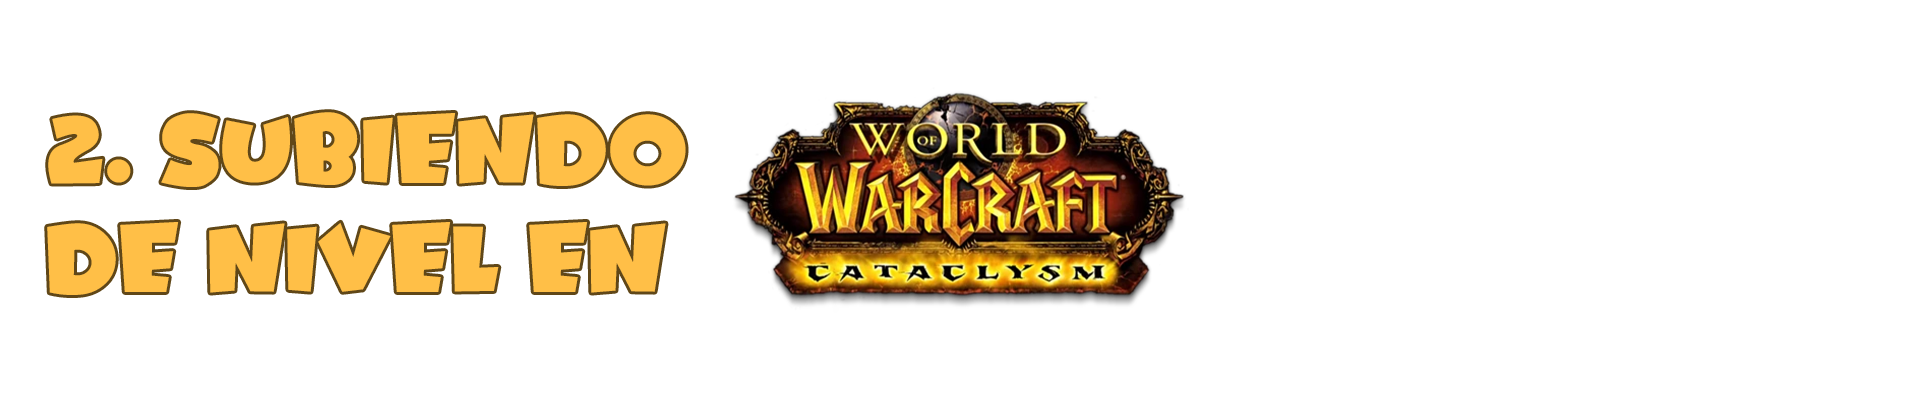 Subiendo de Nivel en World of Warcraft Cataclysm